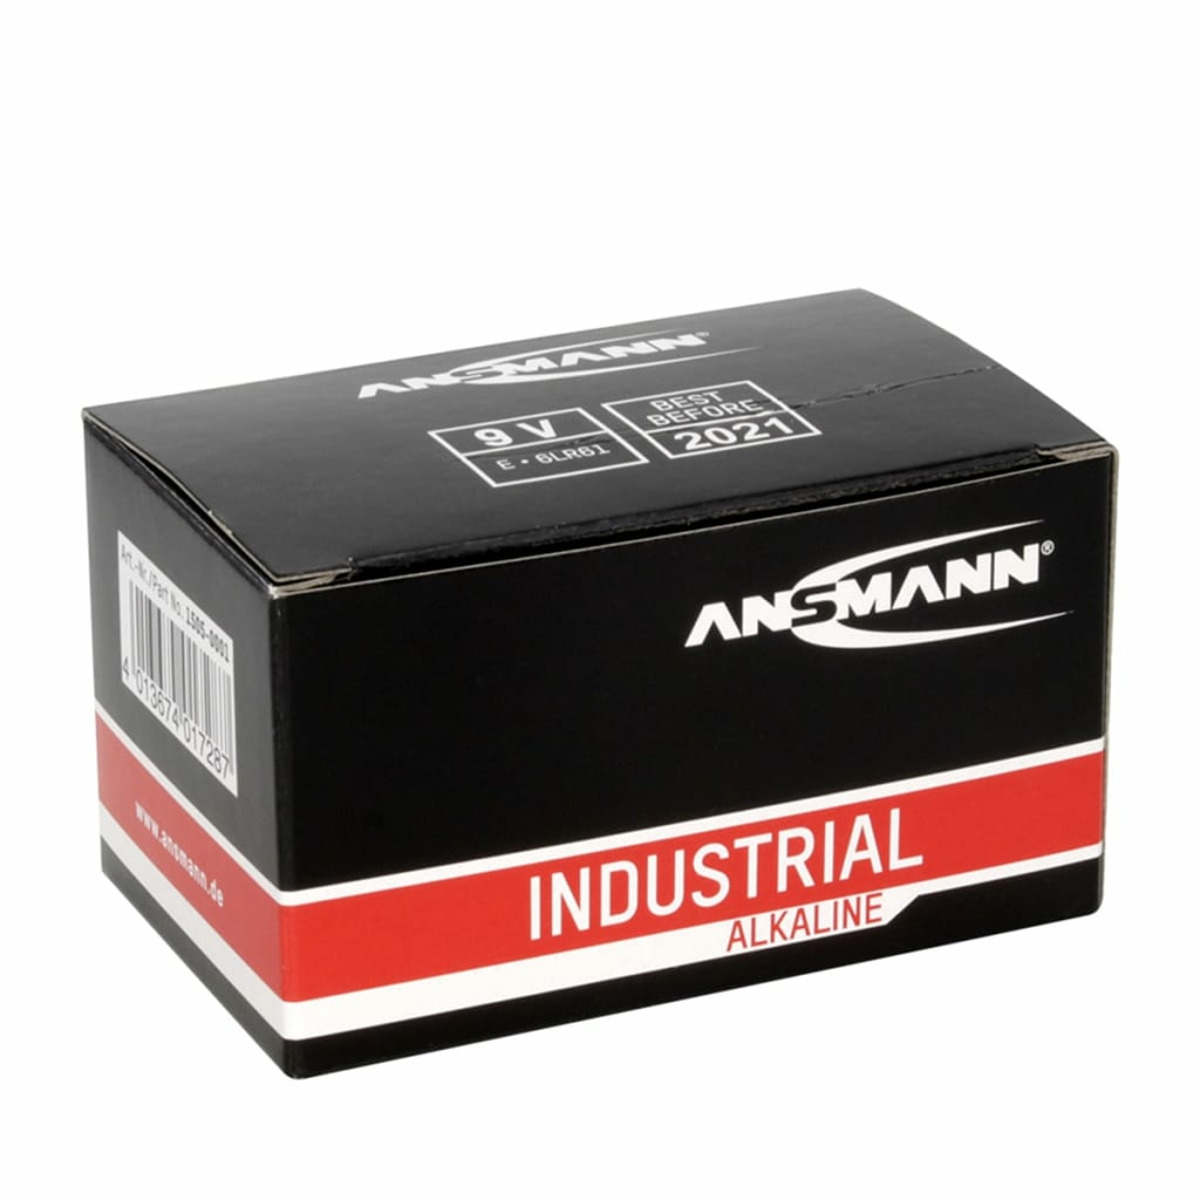 Alkaline Industriebatterie 413398 ANSMANN